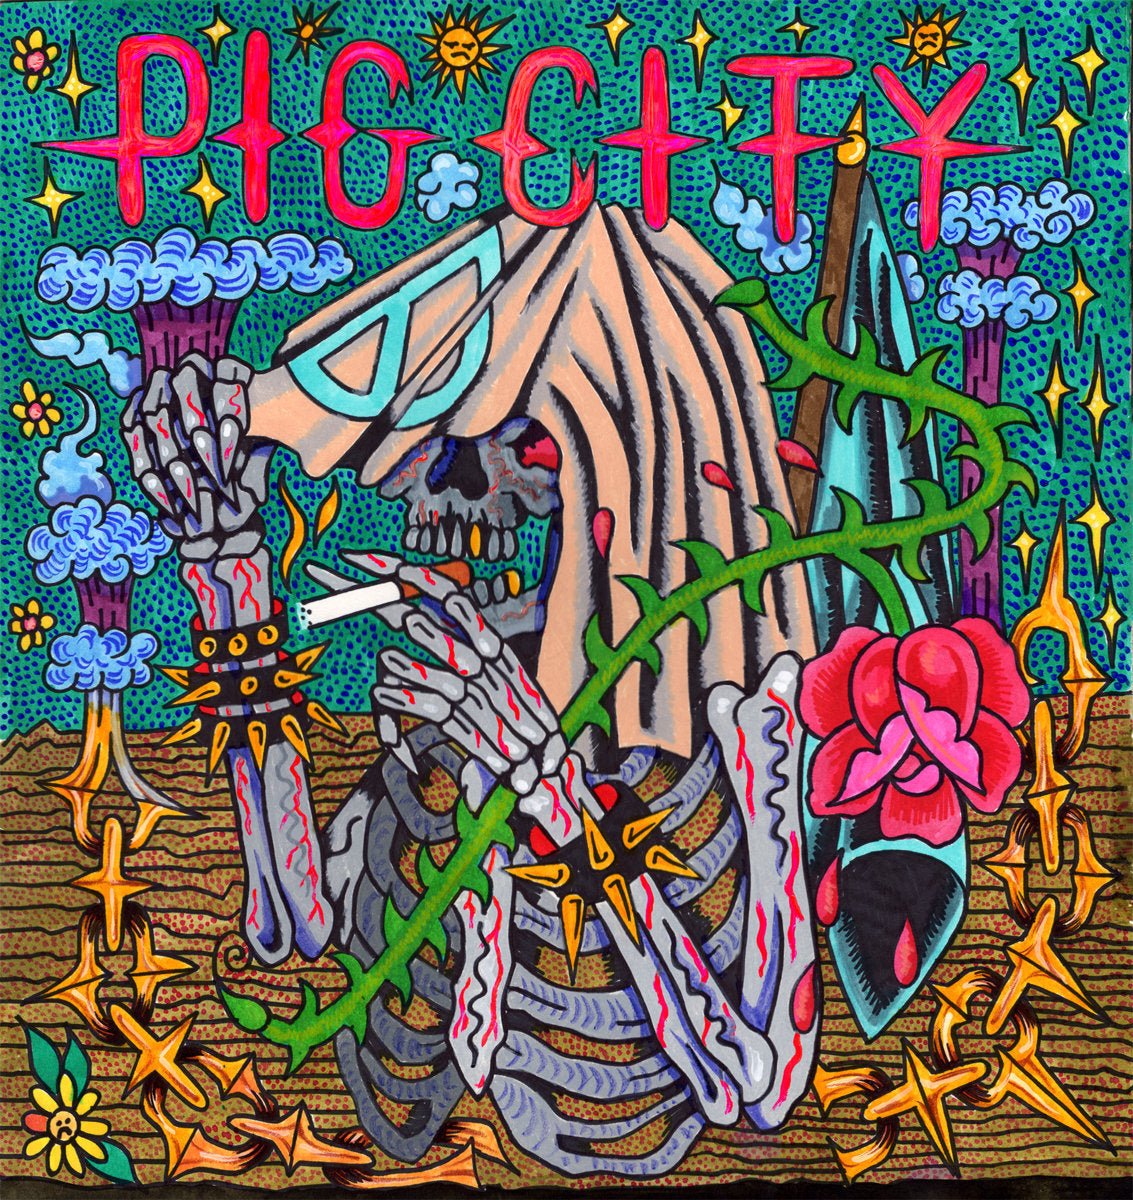 Pig City - s/t LP - Vinyl - To Live A Lie